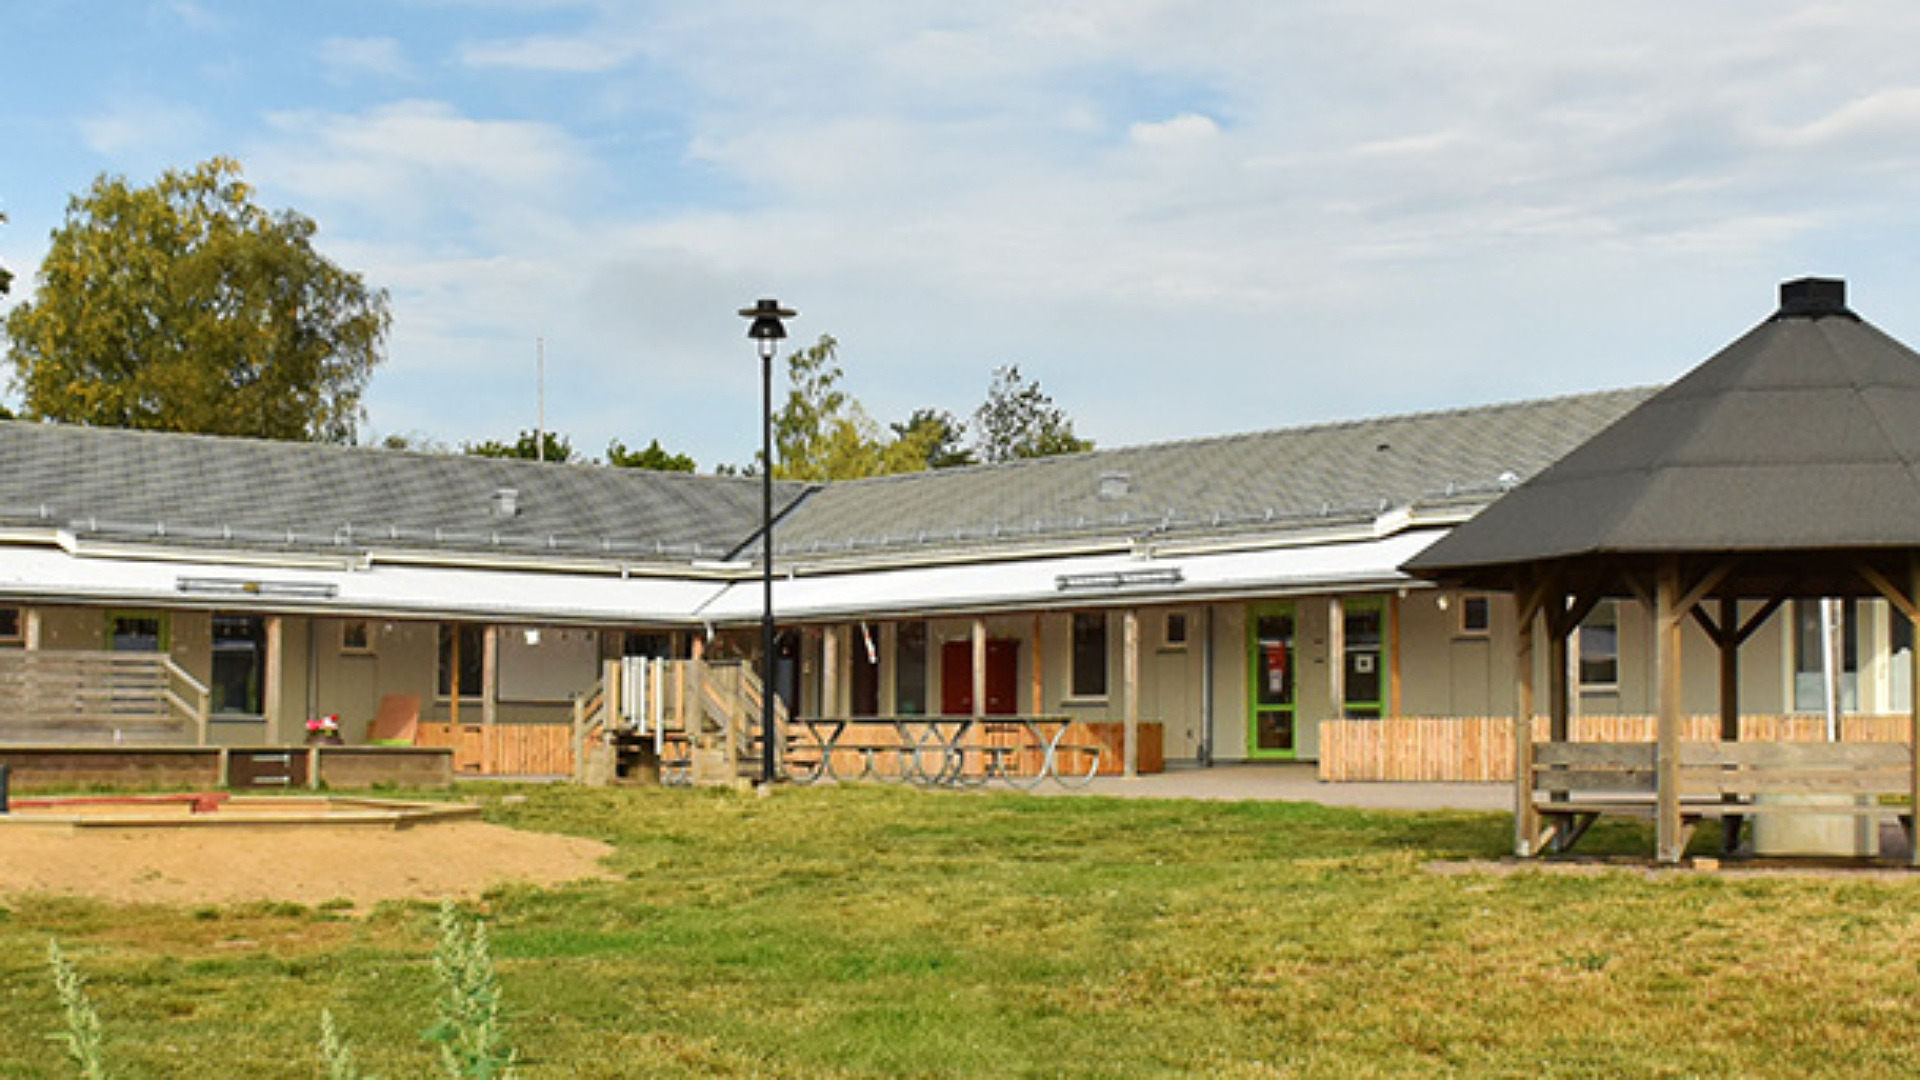 Väsby förskola håller till i en enplans byggnad. På gården finns stora grönområden samt en lekplats, en sandlåda och på gräset finns plats för odling i pallkragar.